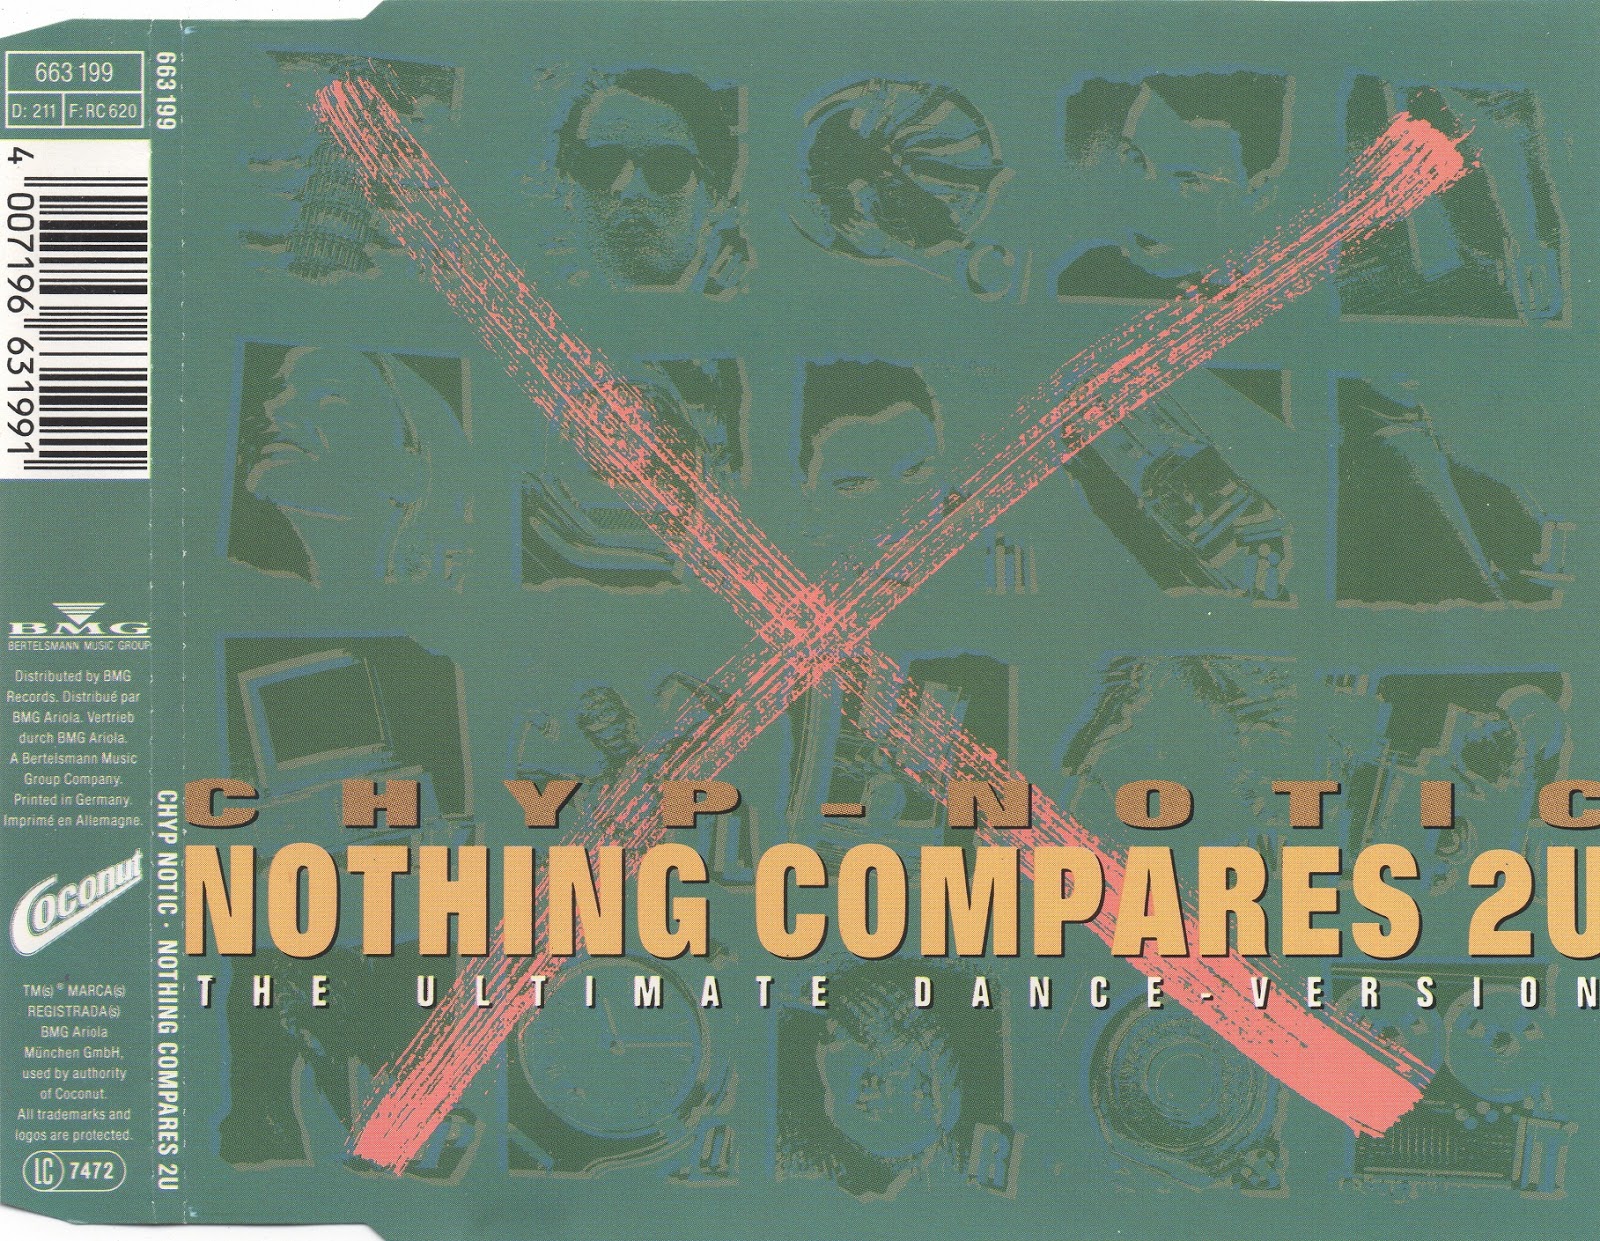 Песня nothing compares. Chyp-notic – nothing compares. Nothing compares 2 u 1990. Chyp-notic nothing compares 2 u. Chyp-notic - nothing compares 2u (Ultimate Dance Version).